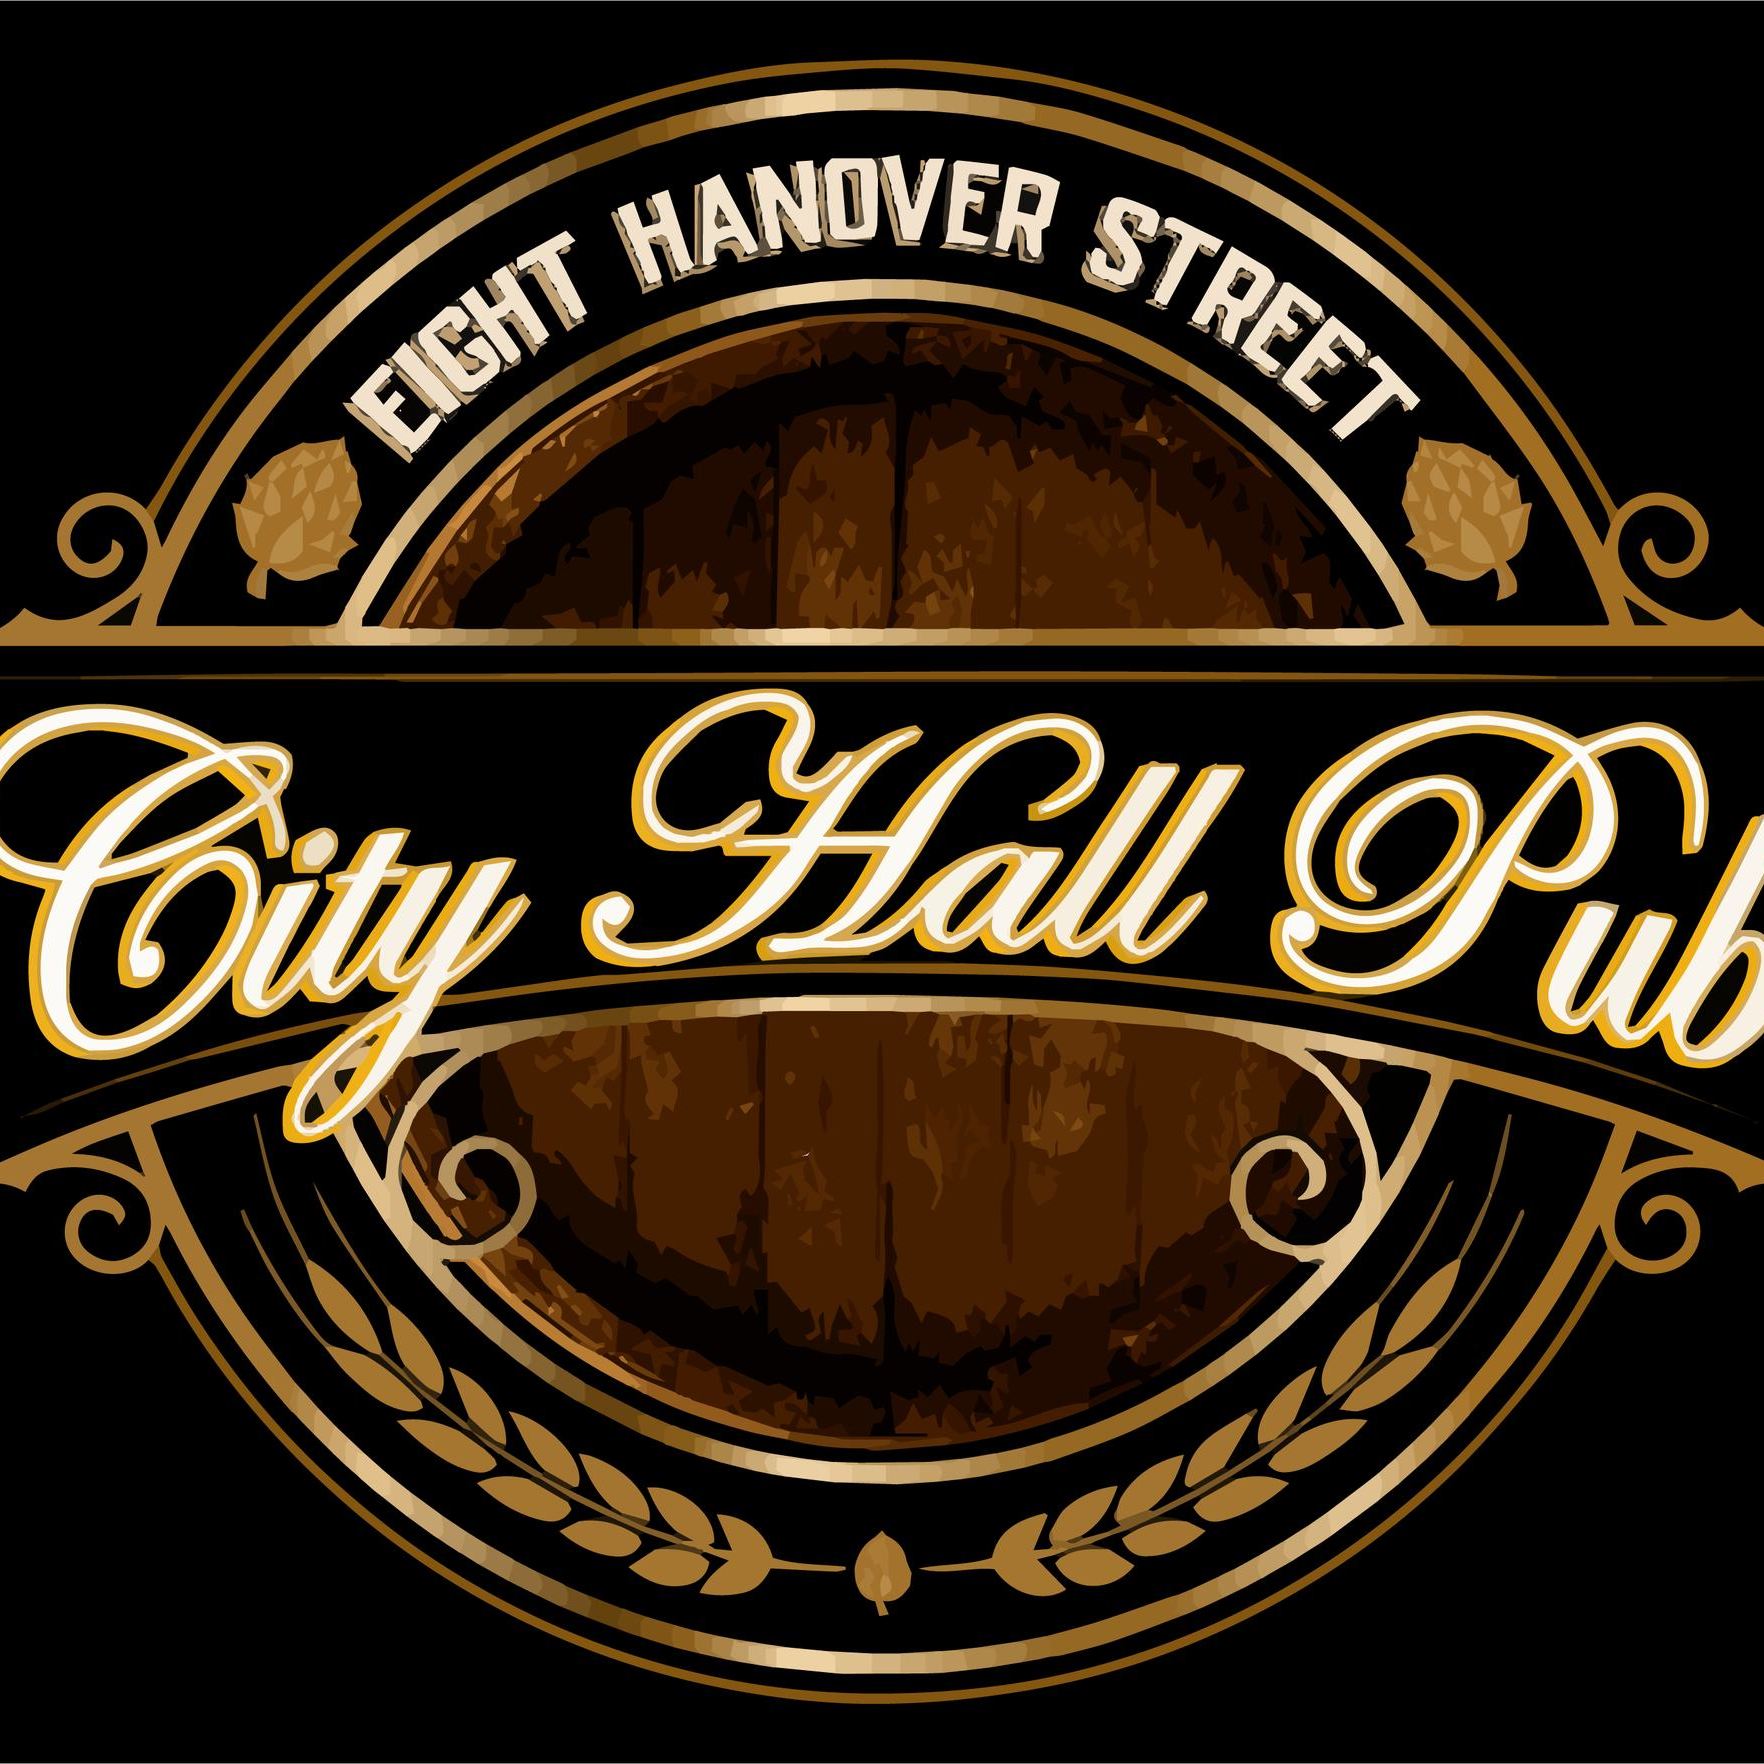 City Hall Pub